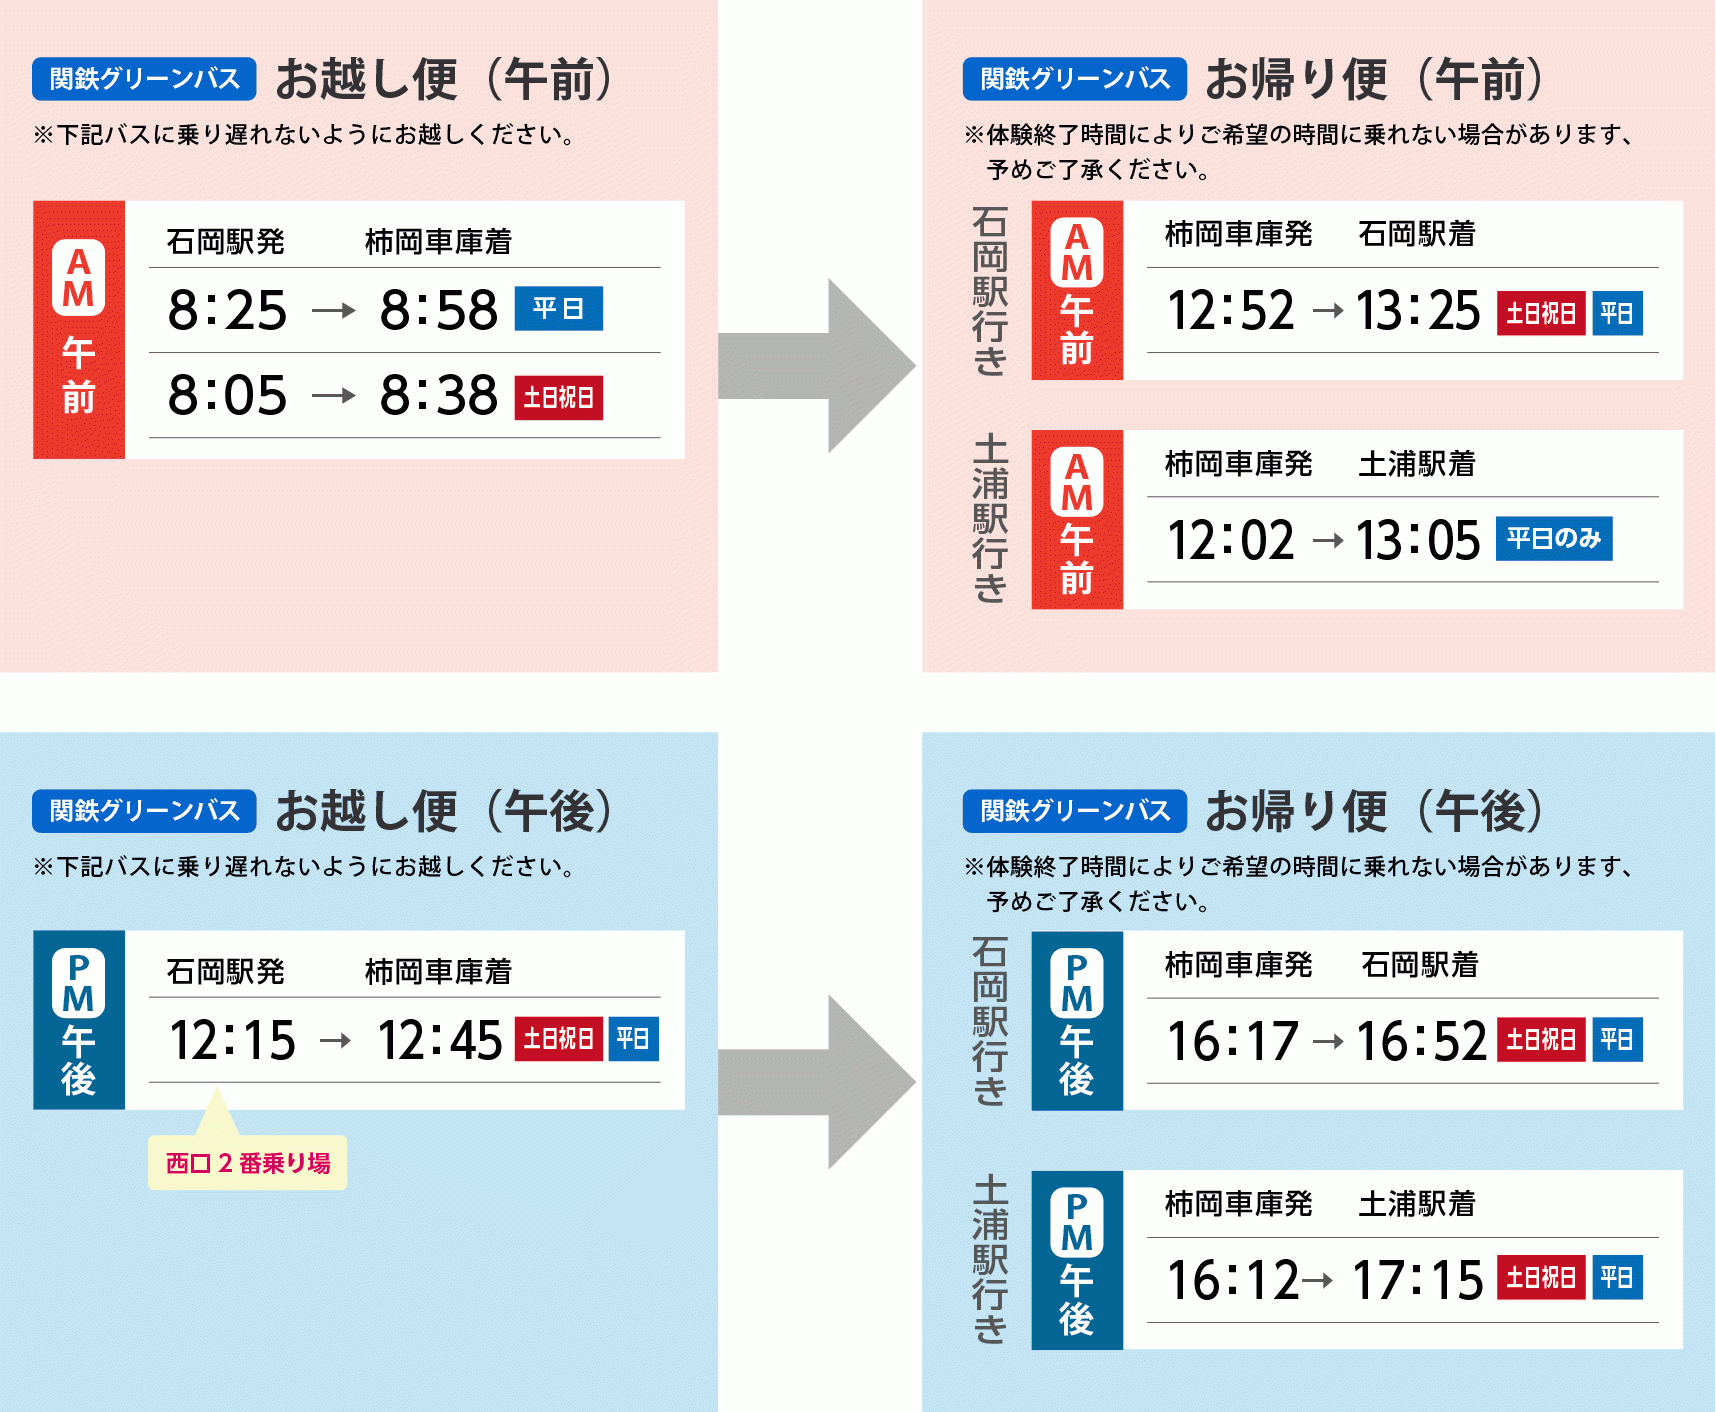 関鉄バス「お越し便」と「お帰り便」の時刻表